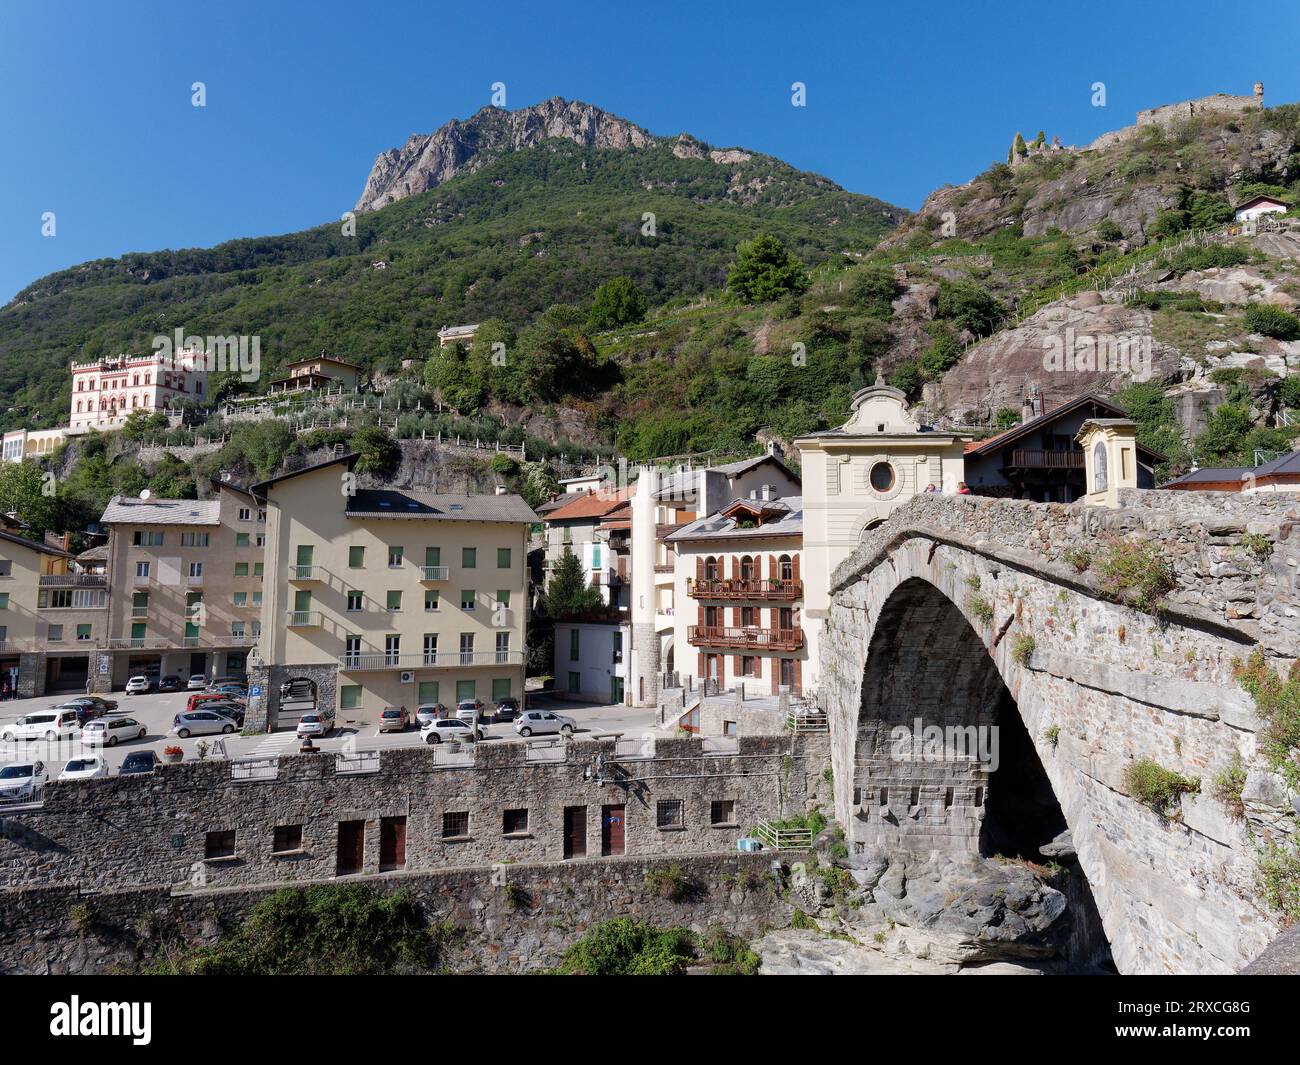 Pont-Saint-Martin un pont romain sur la rivière Dora Baltea dans la ville nommée d'après le pont dans la région de la vallée d'Aoste au nord-ouest de l'Italie, 24 septembre 2023 Banque D'Images